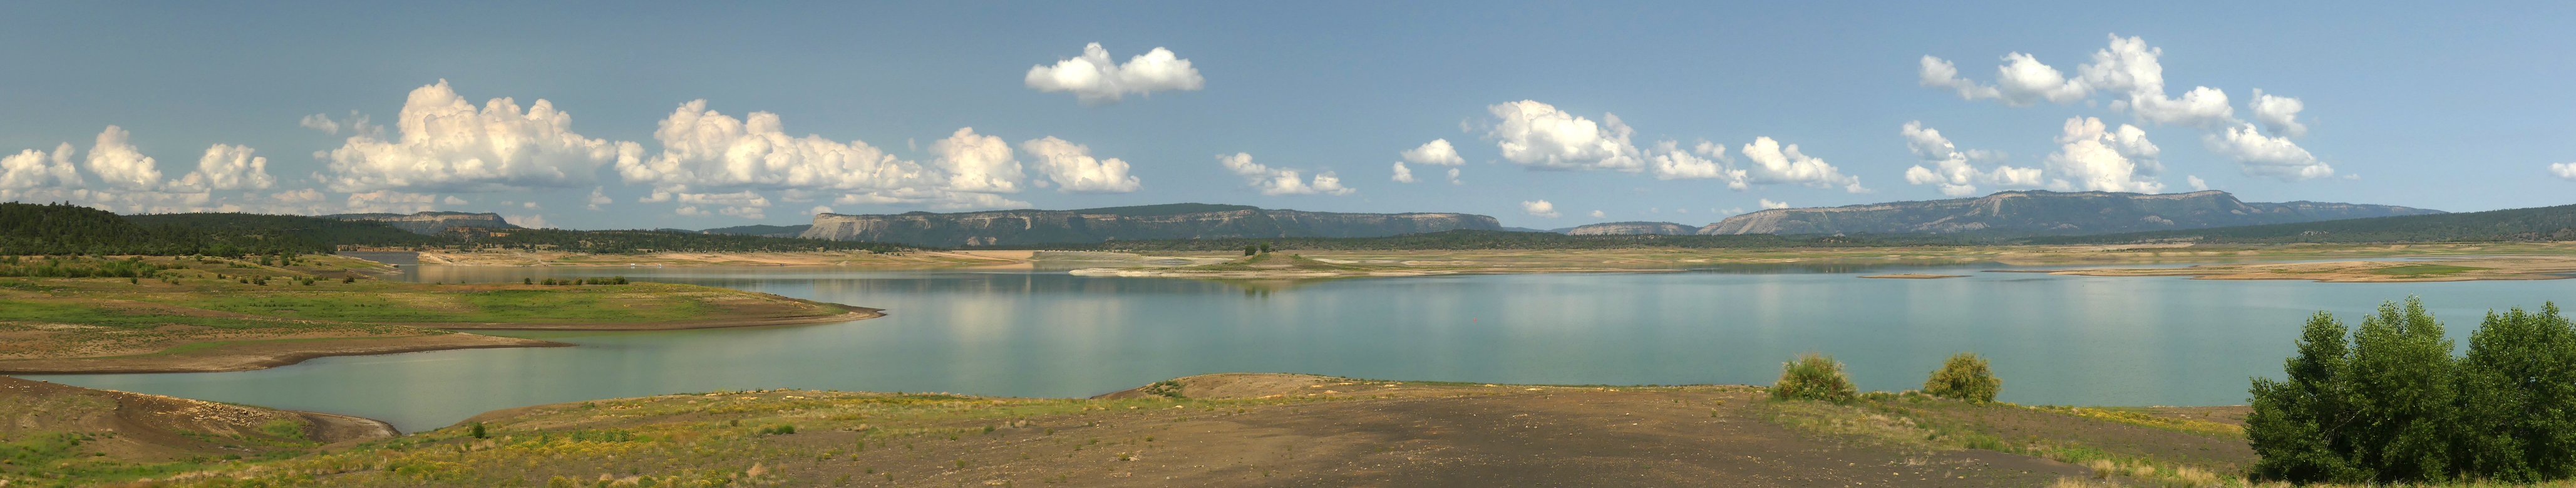 Heron Lake panorama